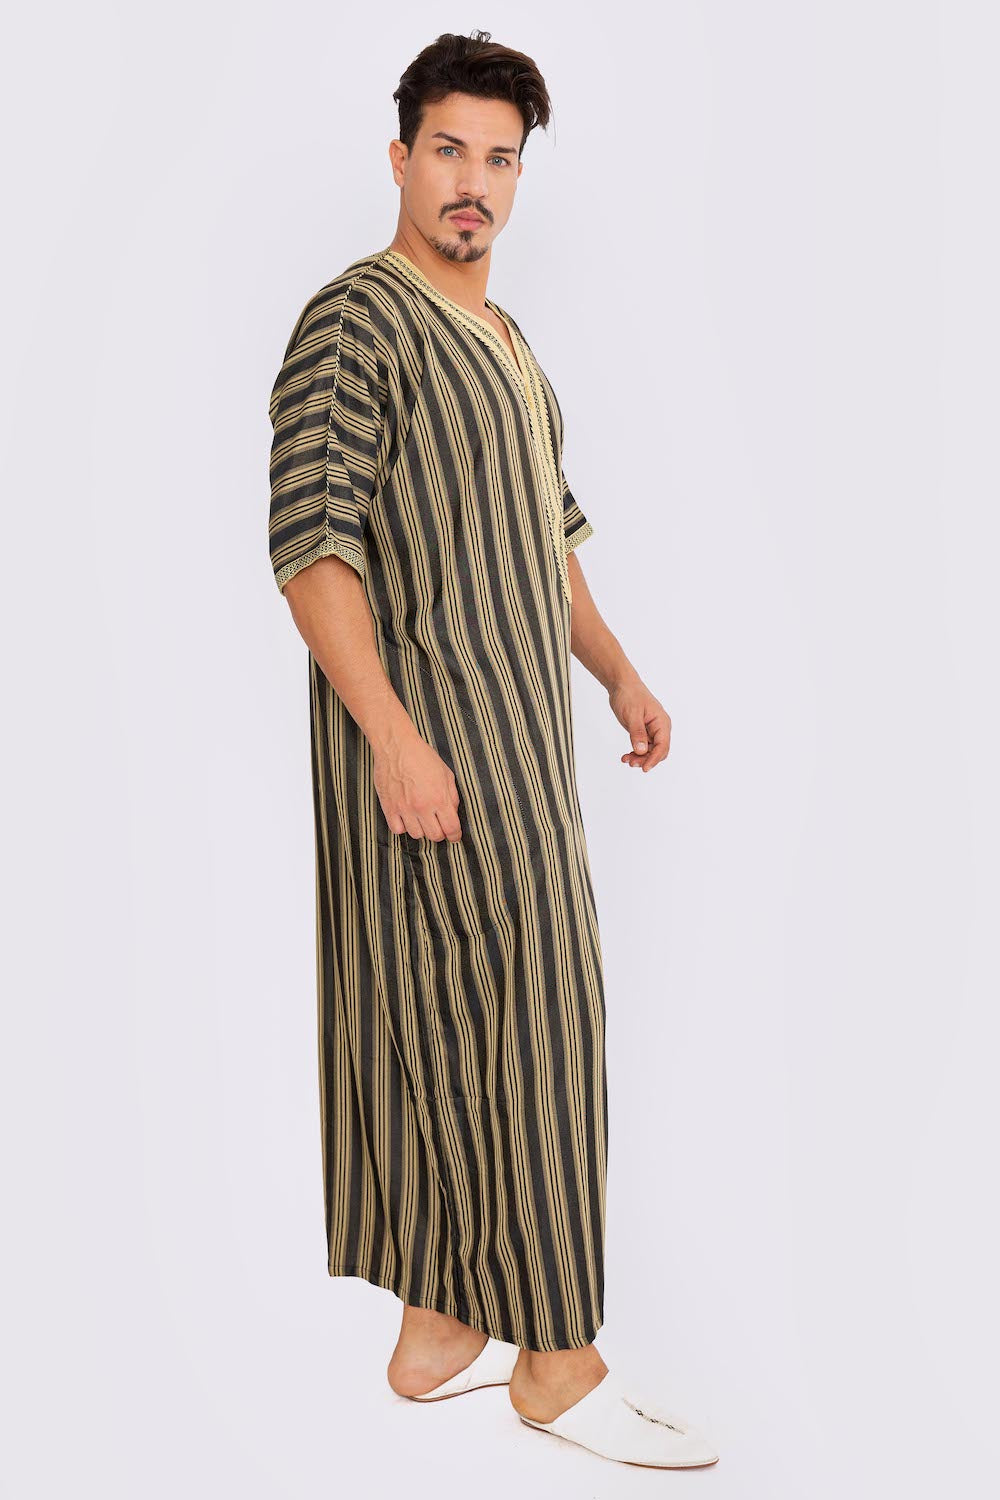 Gandoura Men's Short Sleeve Long Striped Thobe in Black & Gold